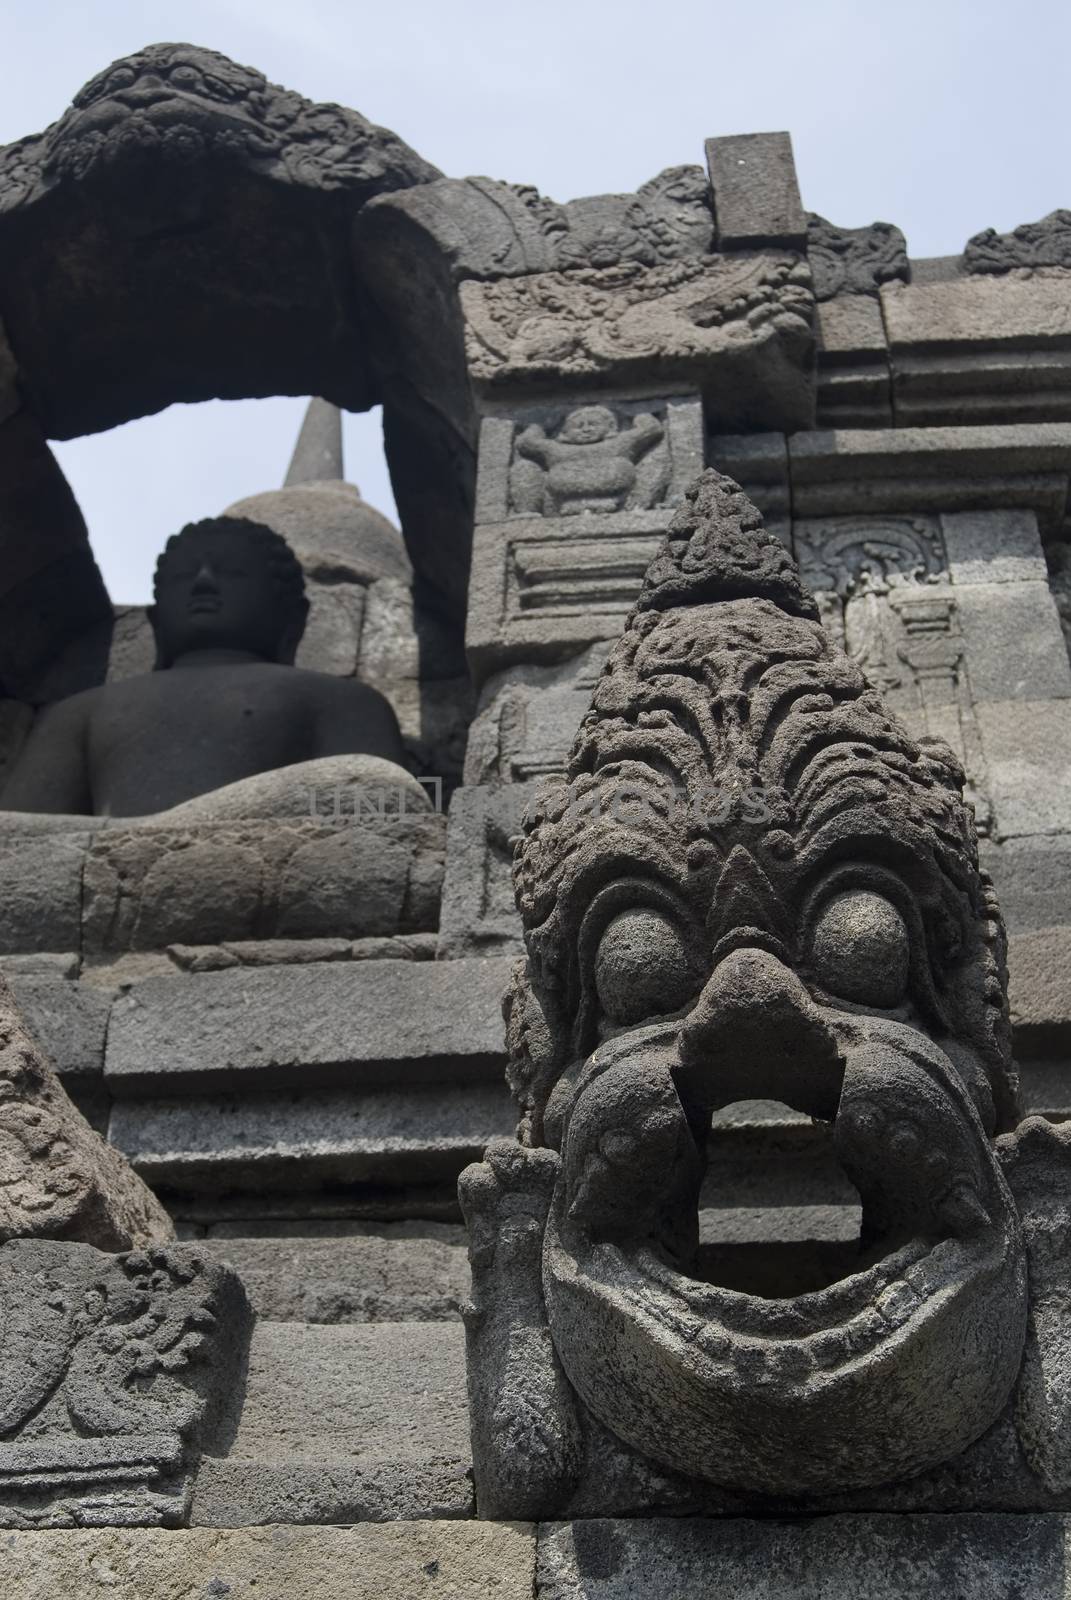 Borobudur Temple in Java, Indonesia